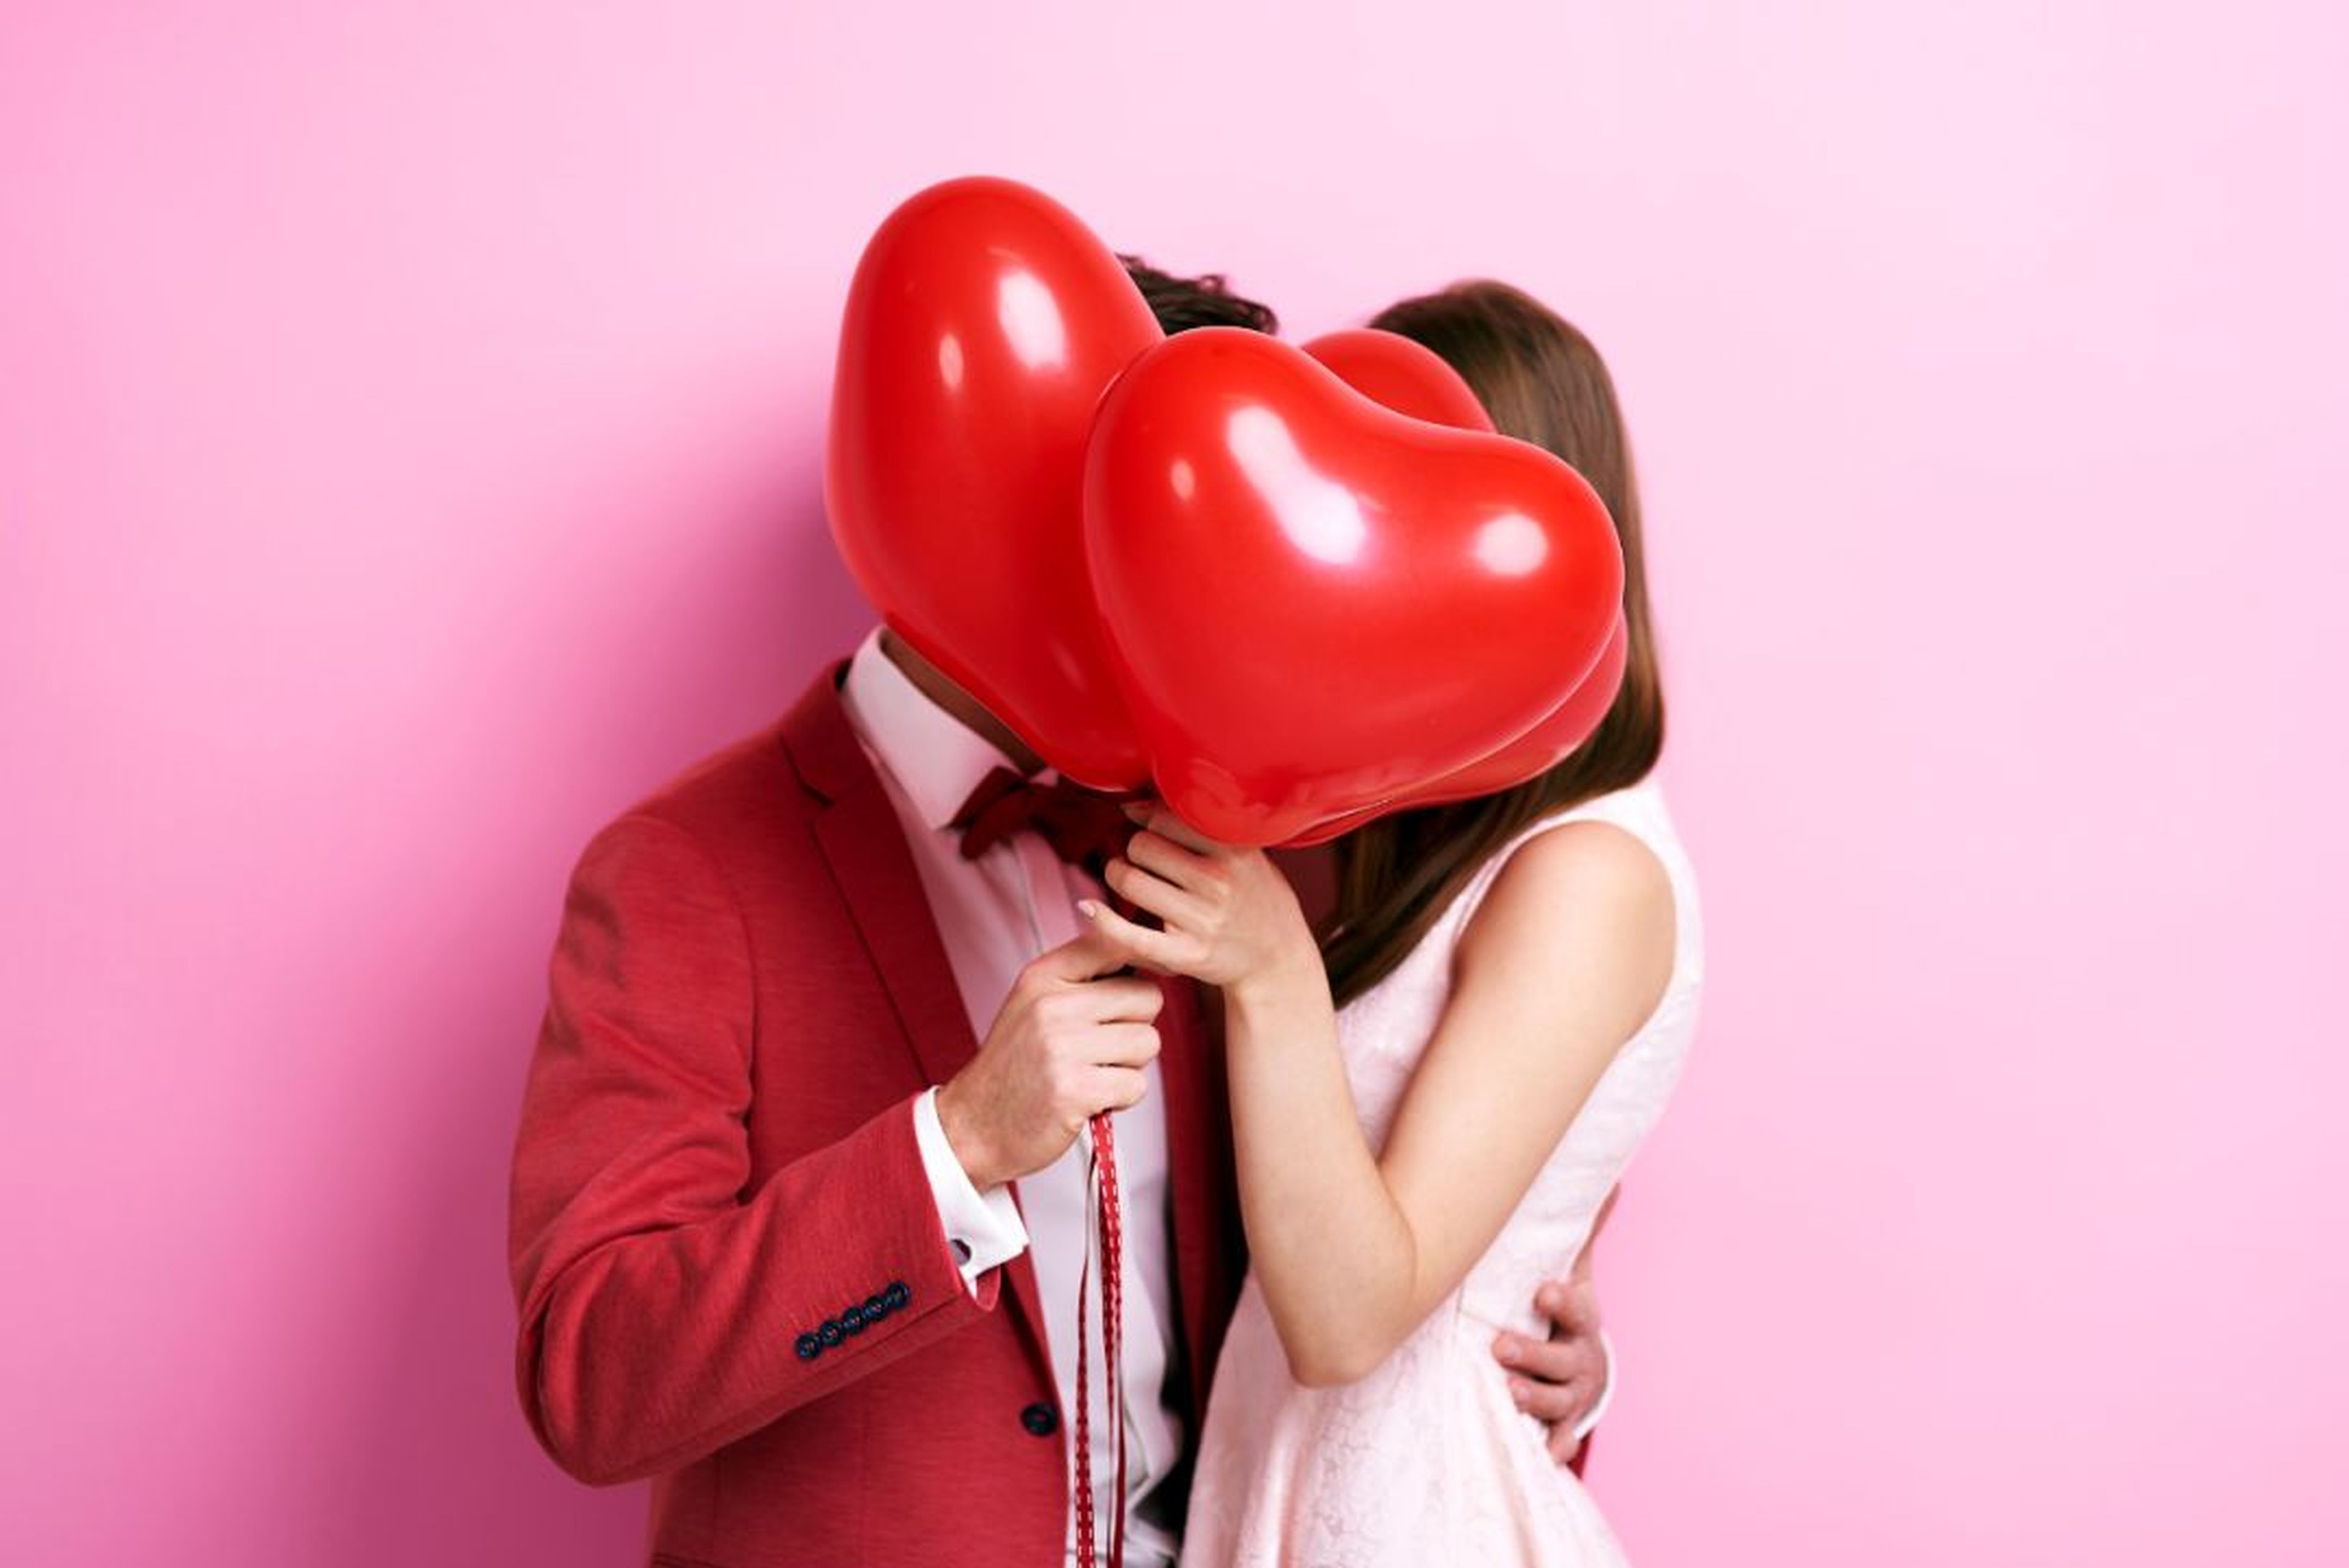 Los mejores planes baratos de San Valentín para hacer en pareja | Computer  Hoy